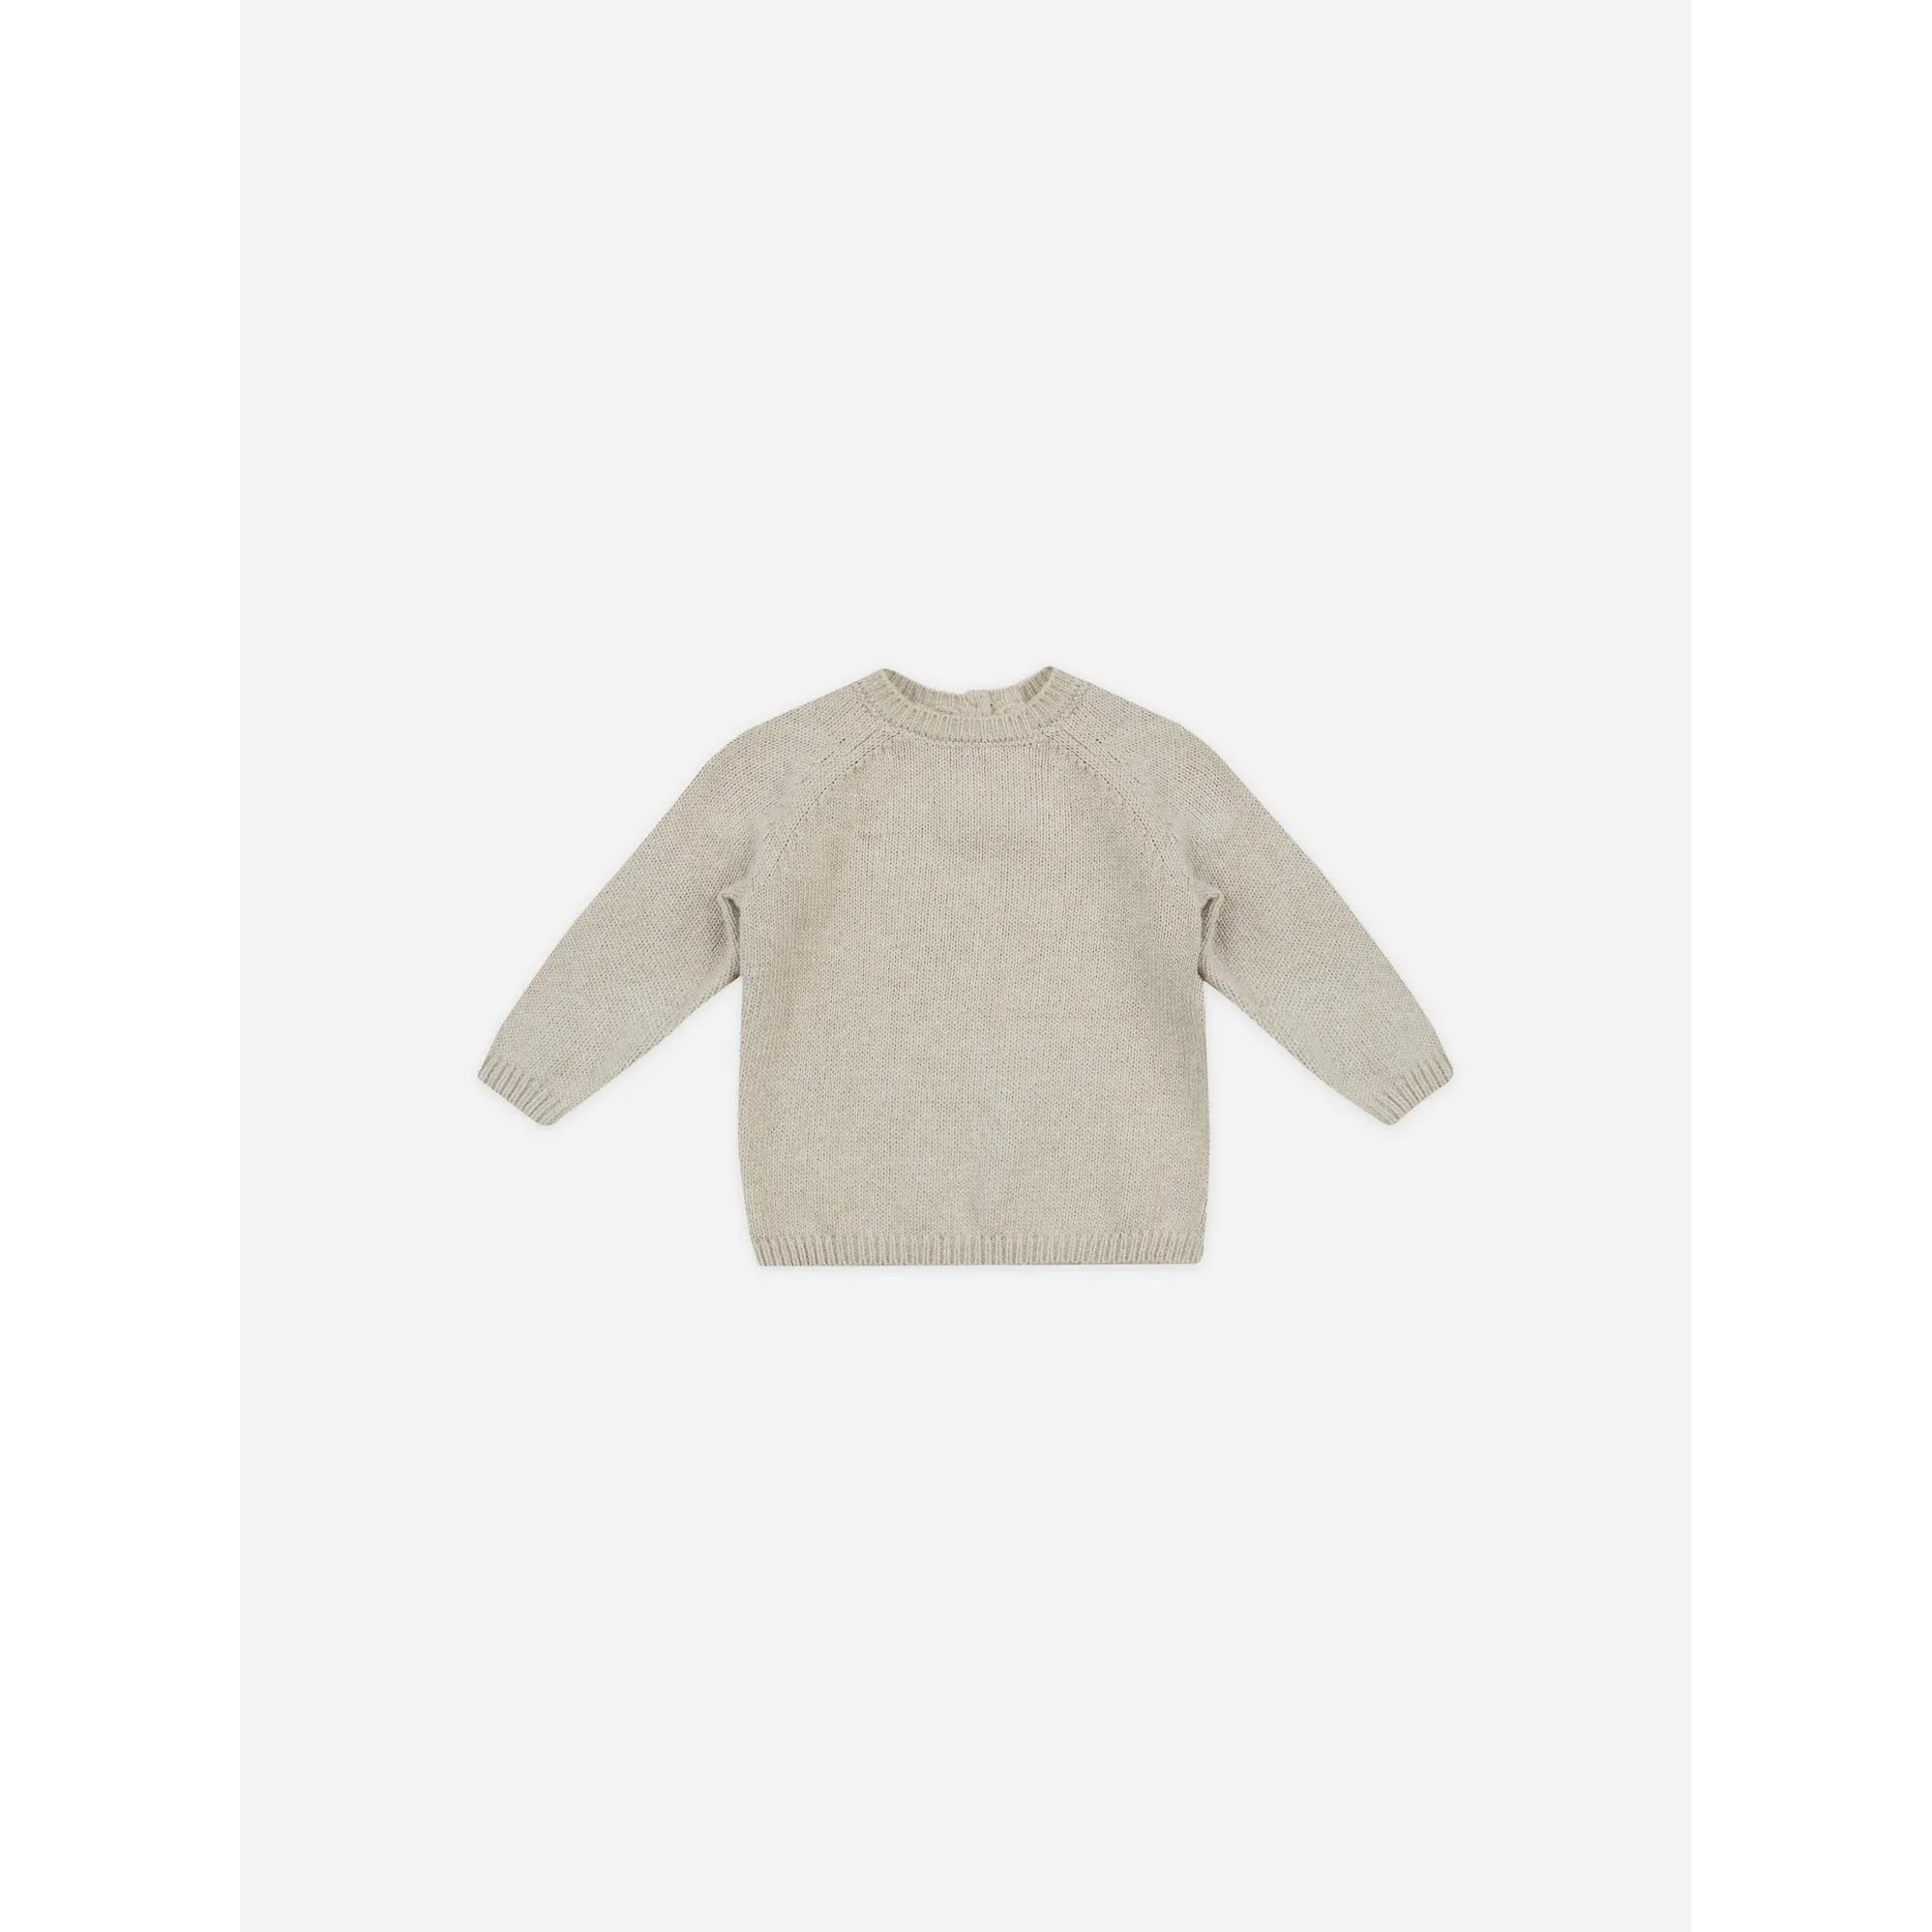 knit sweater || heathered ash